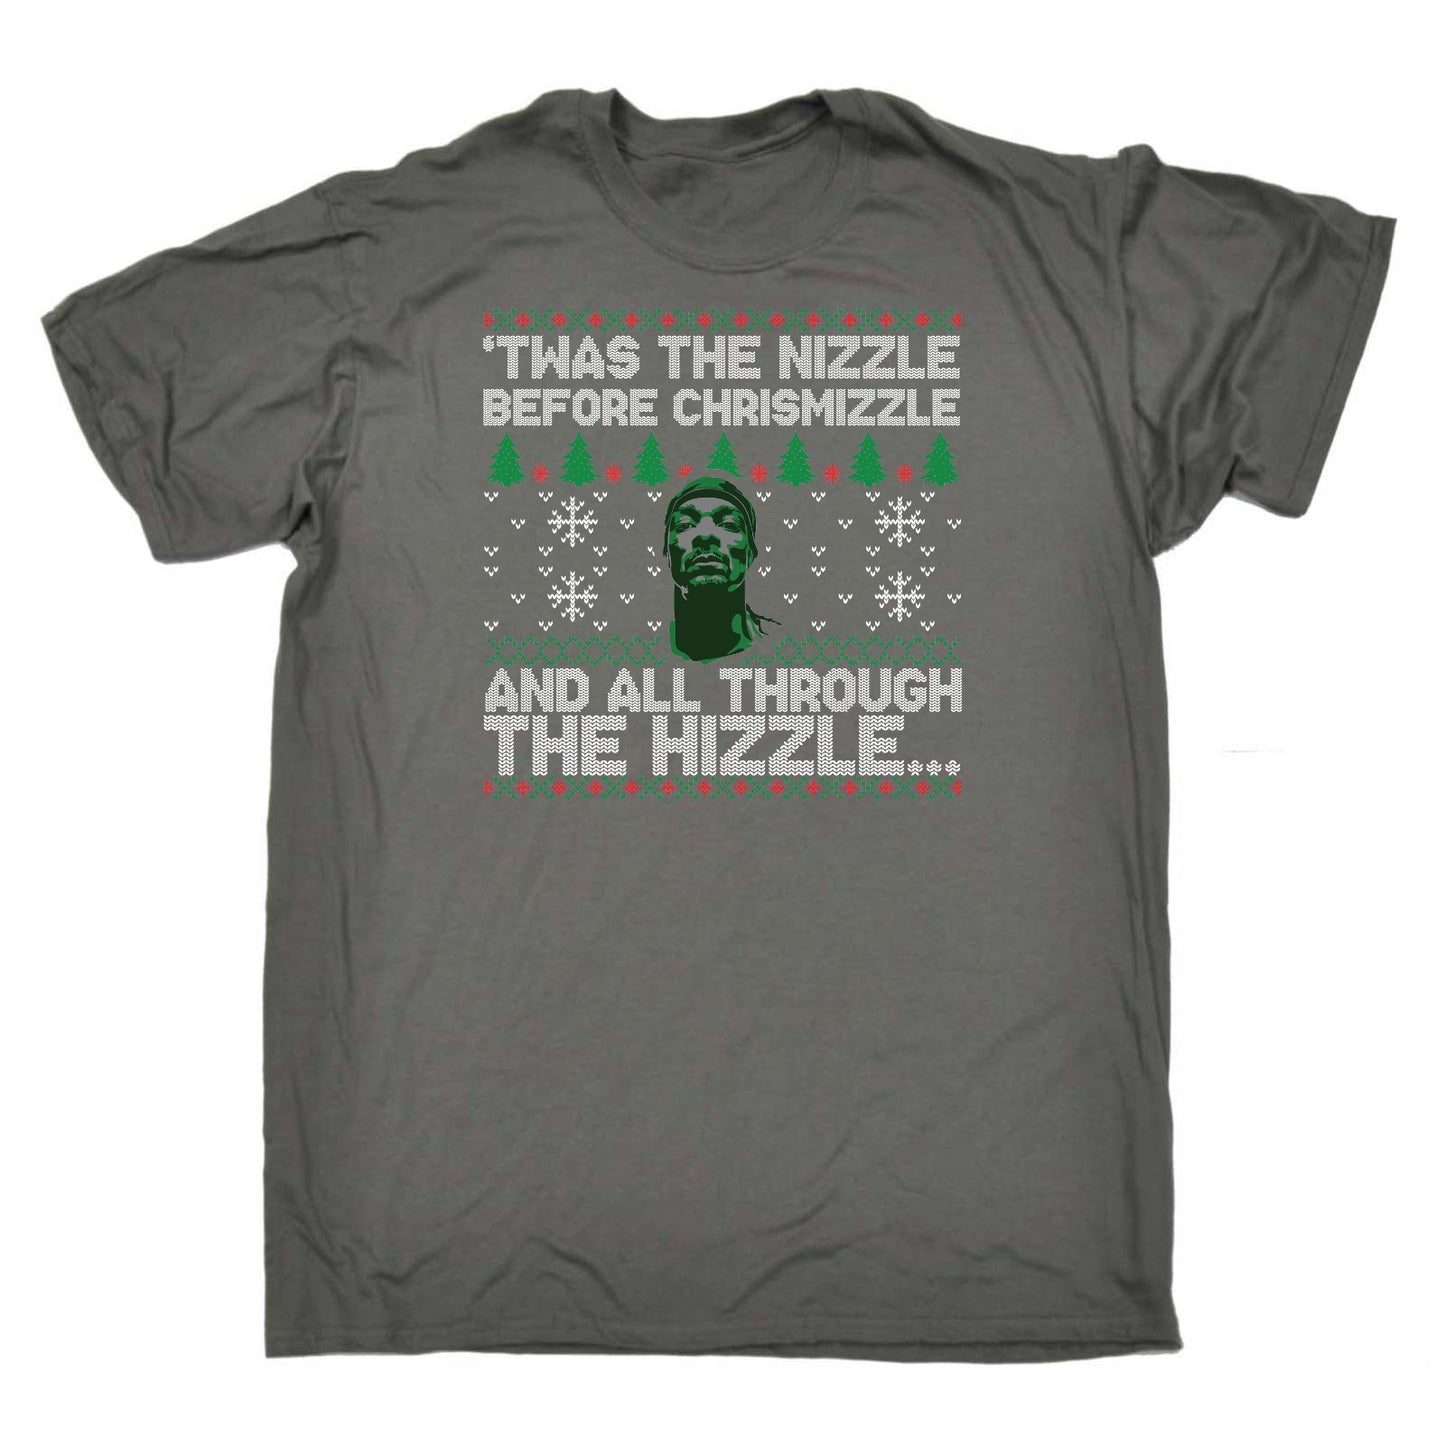 Twas The Nizzle Christmas Rapper Hip Hop - Mens Funny T-Shirt Tshirts